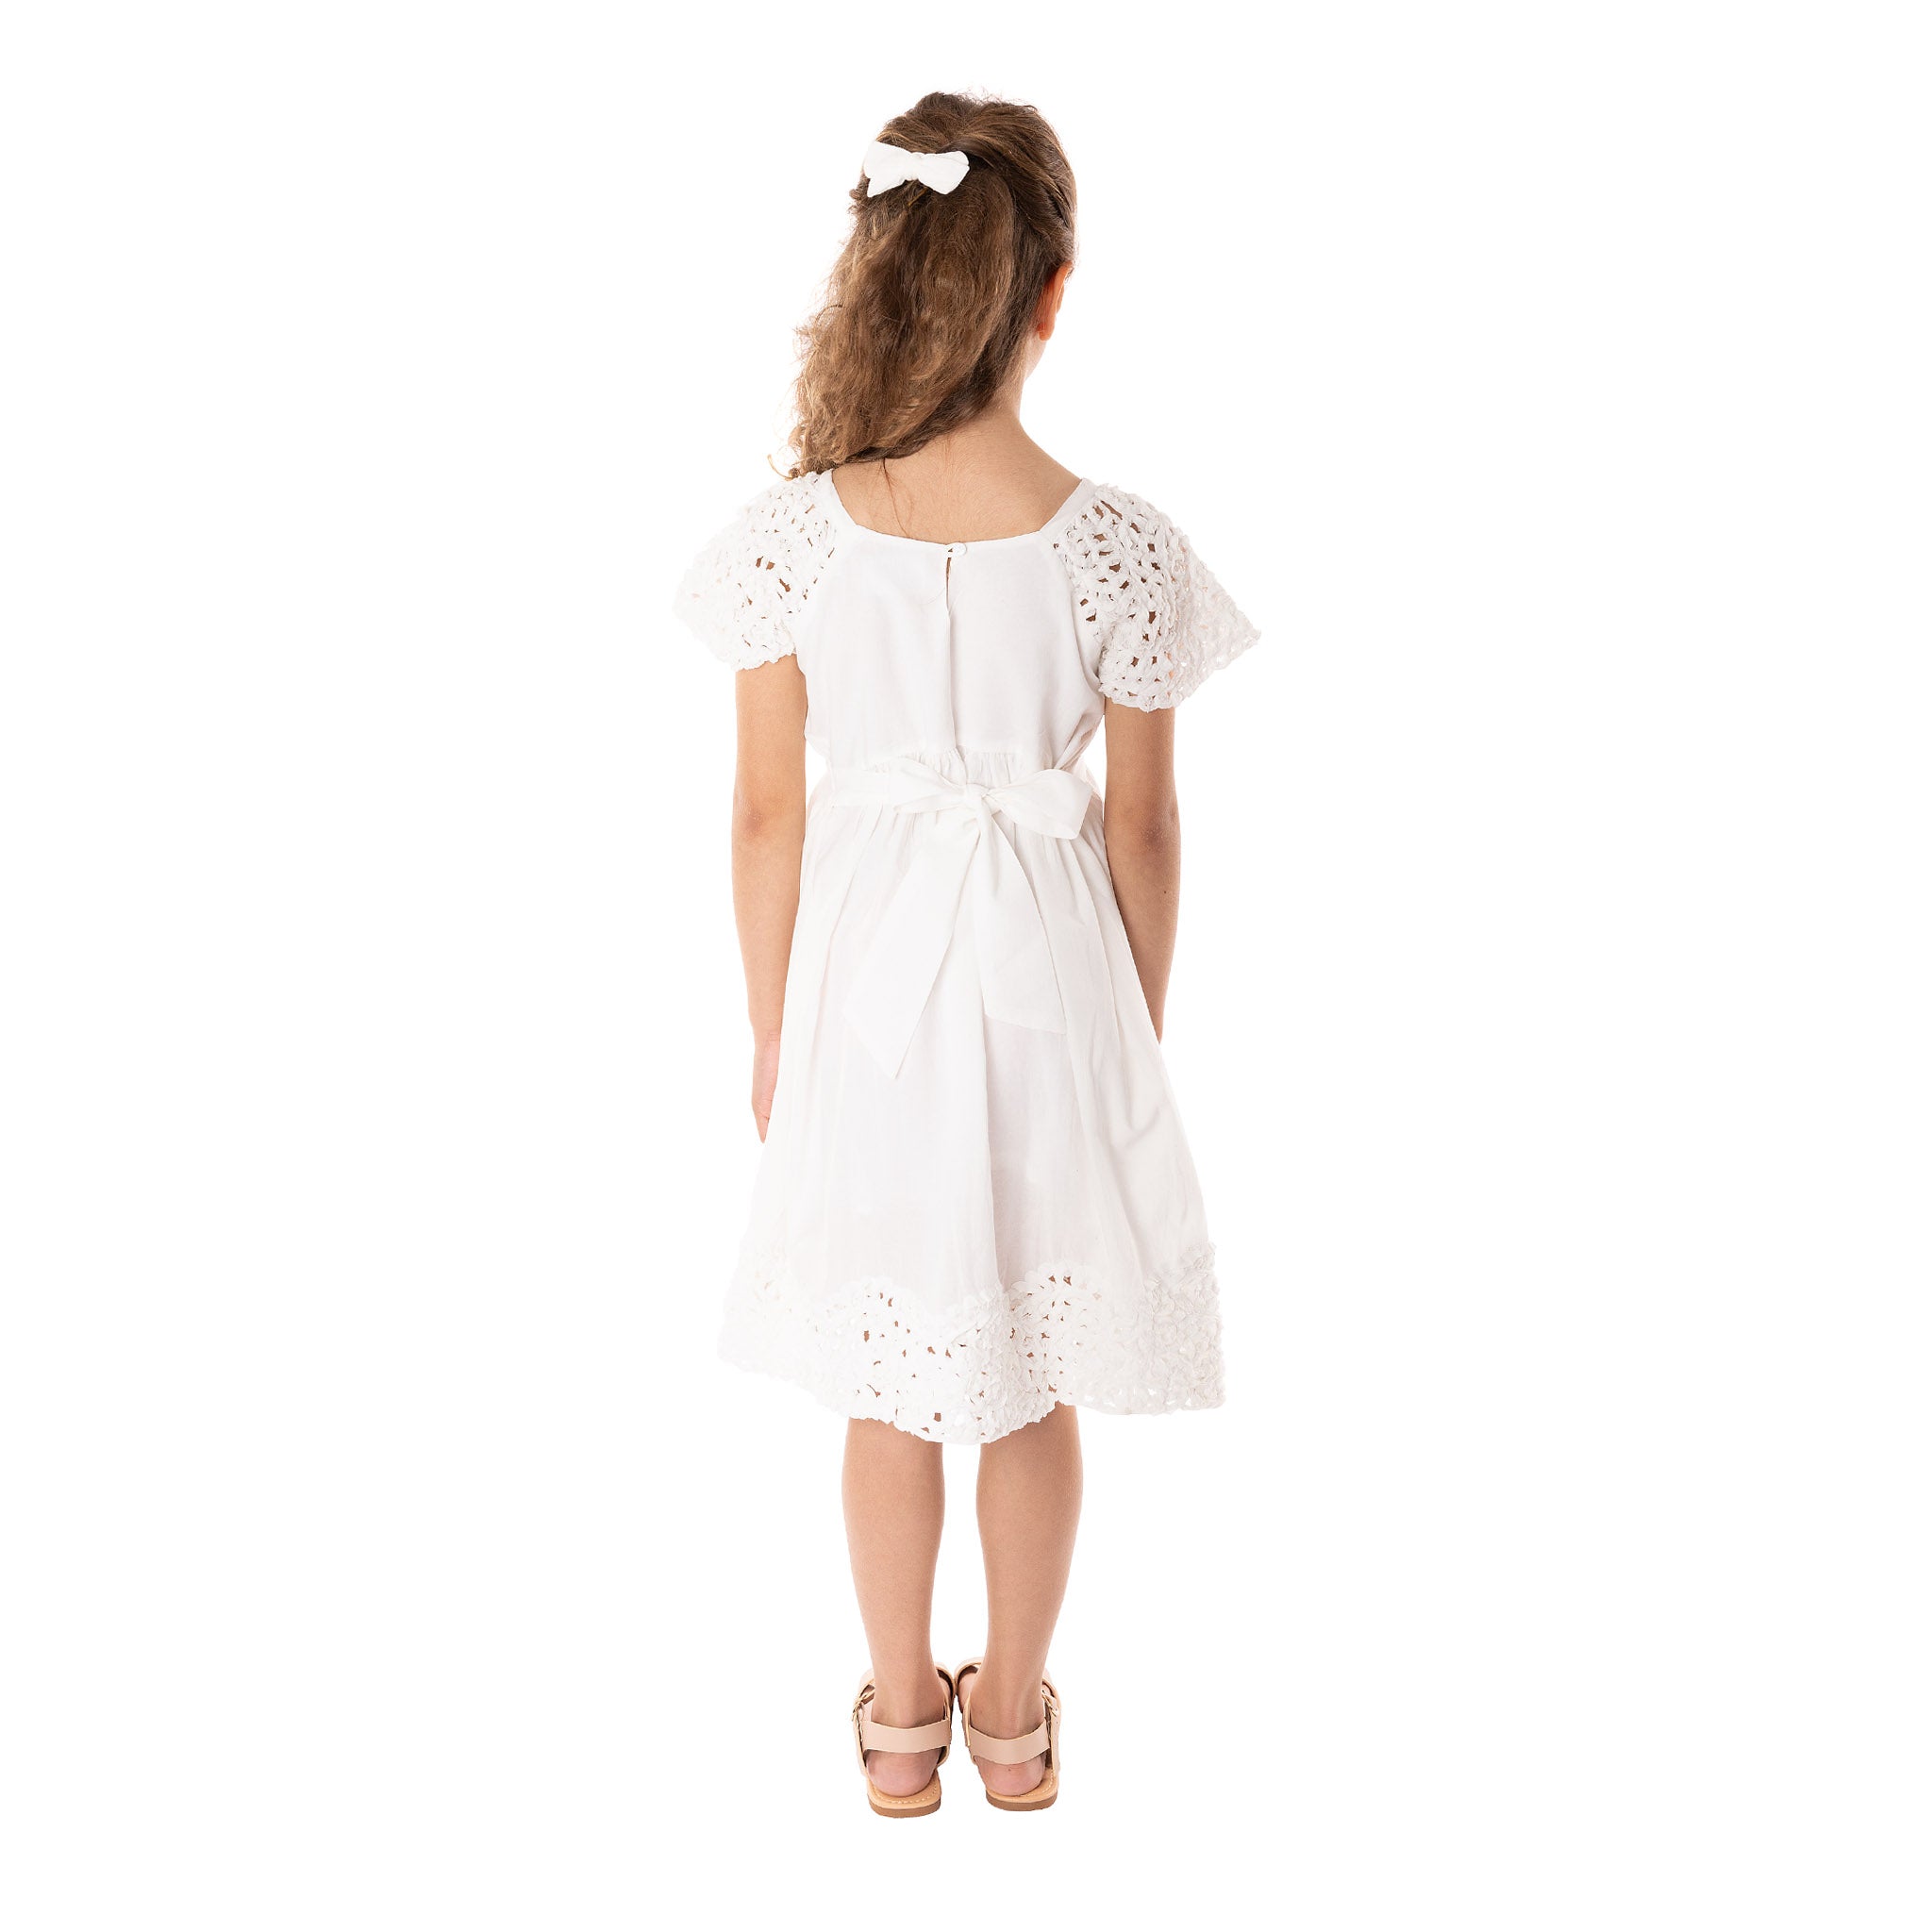 Textured White Cotton Dress - Willow